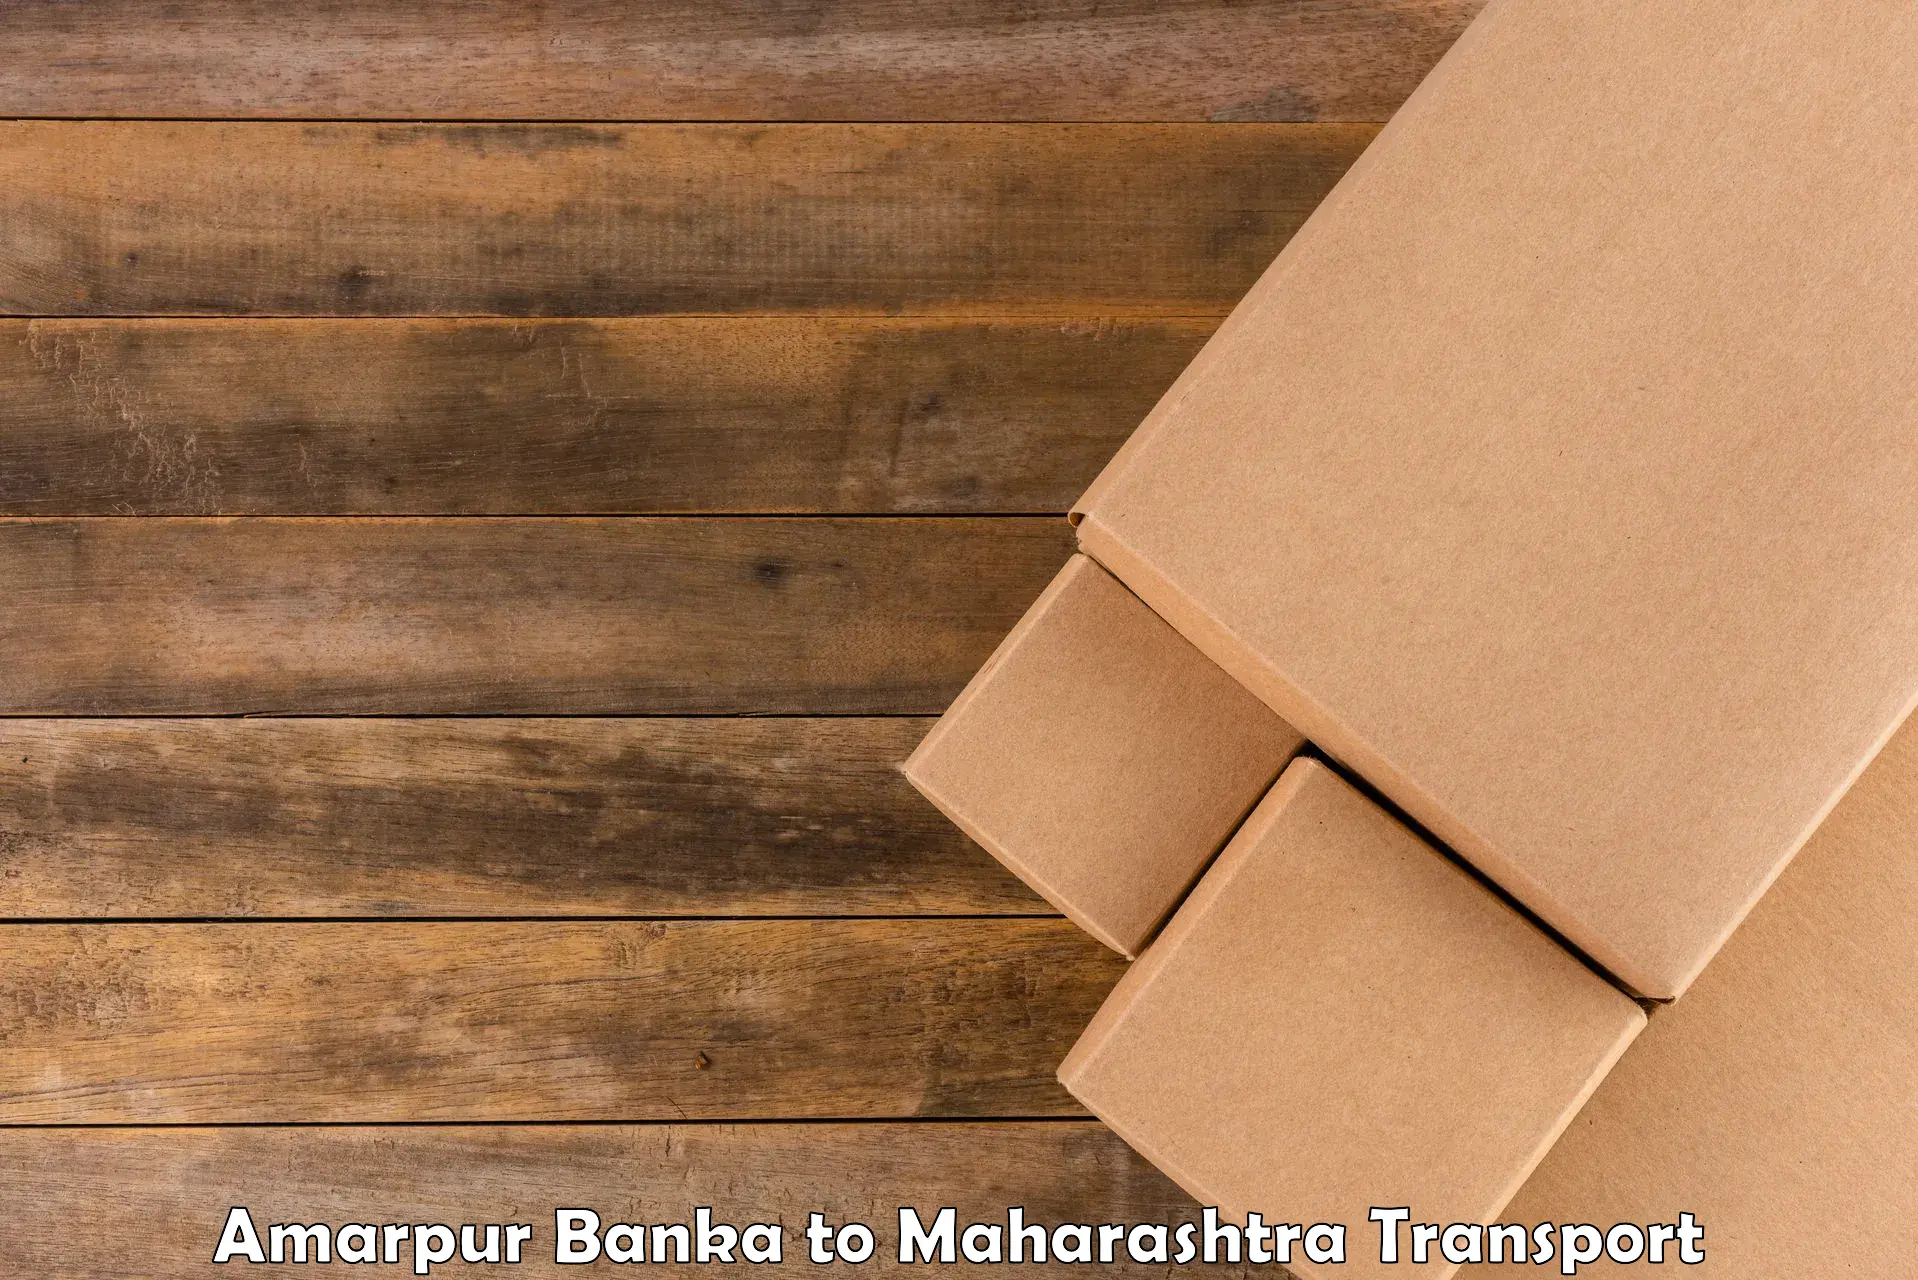 Parcel transport services Amarpur Banka to Nashik